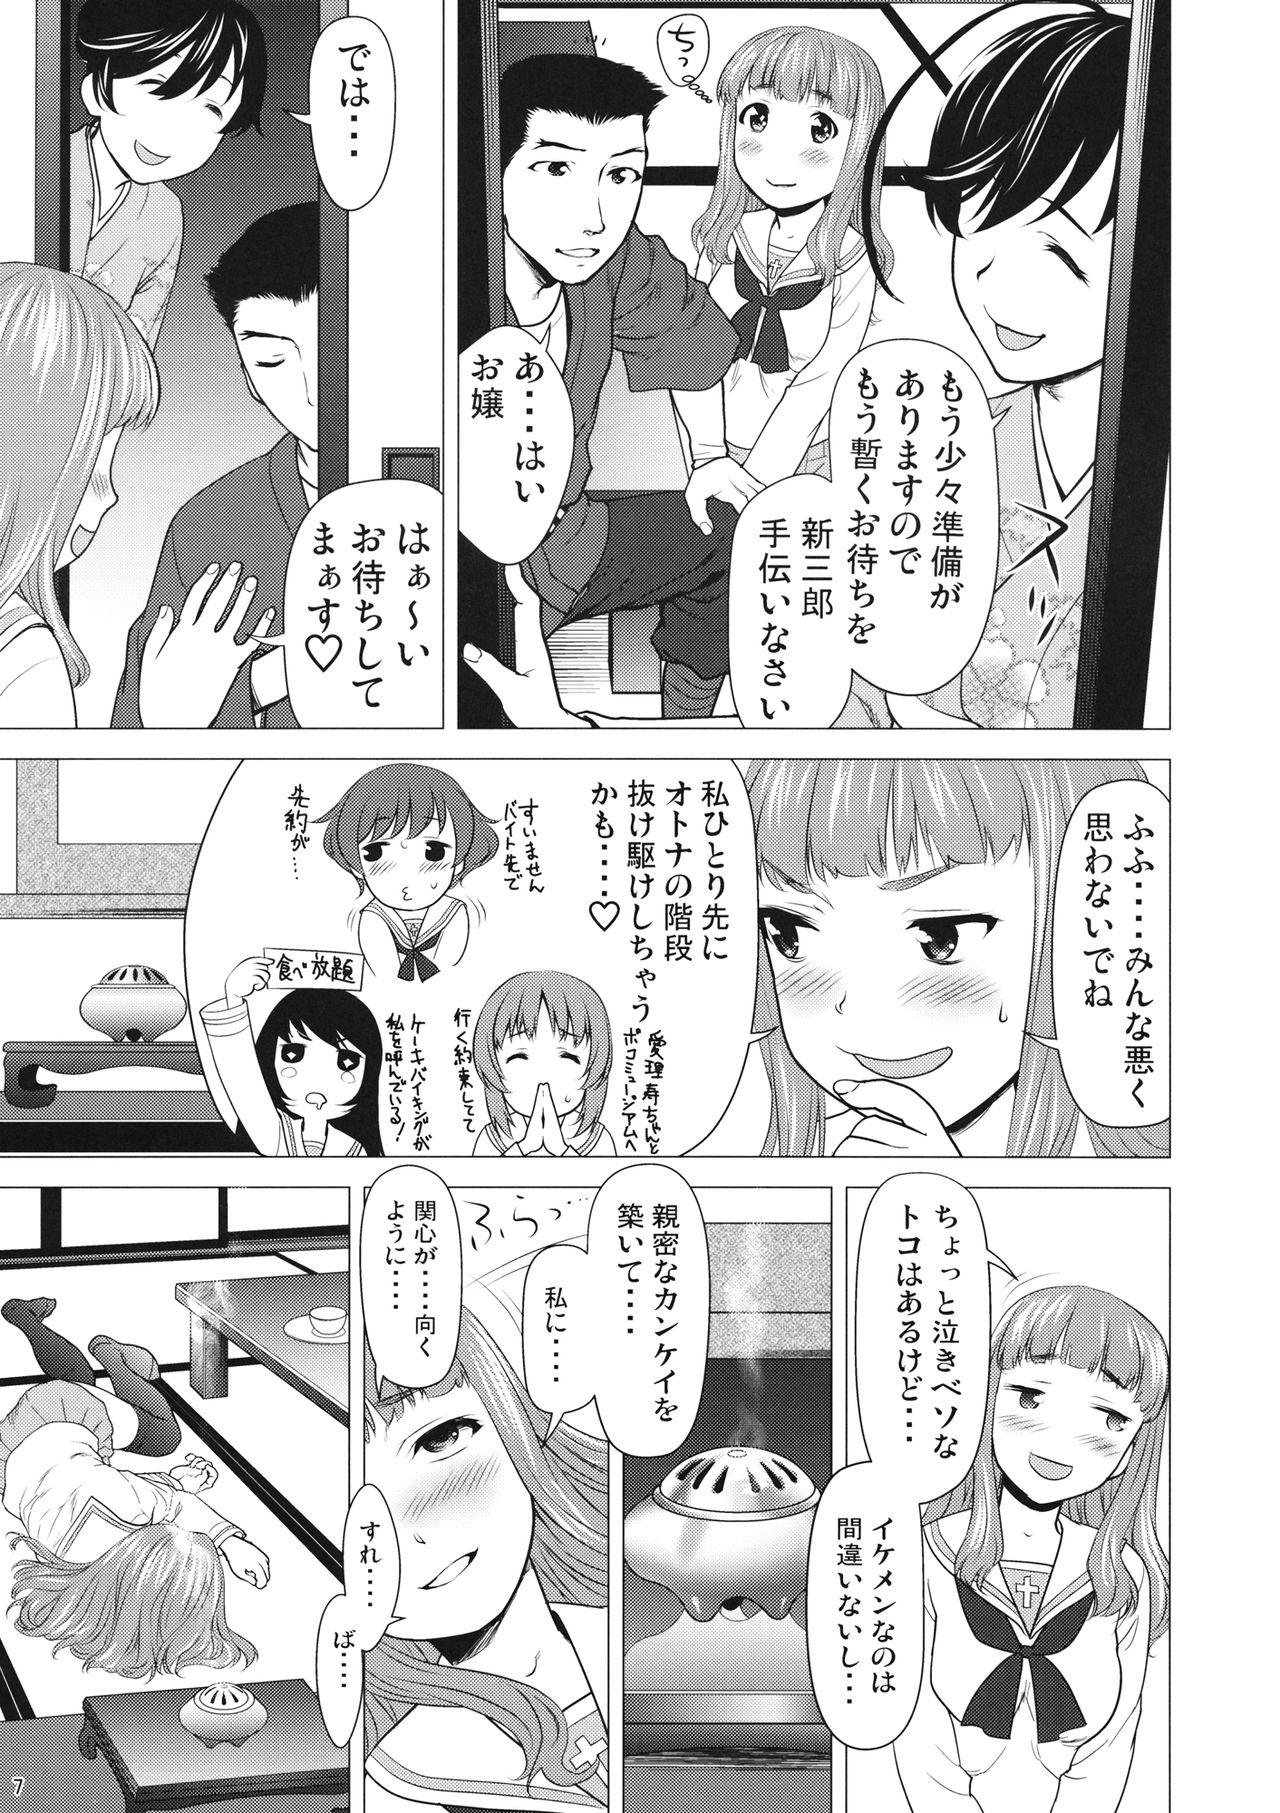 Reversecowgirl Isuzu no Shitsuke - Girls und panzer Lesbo - Page 6